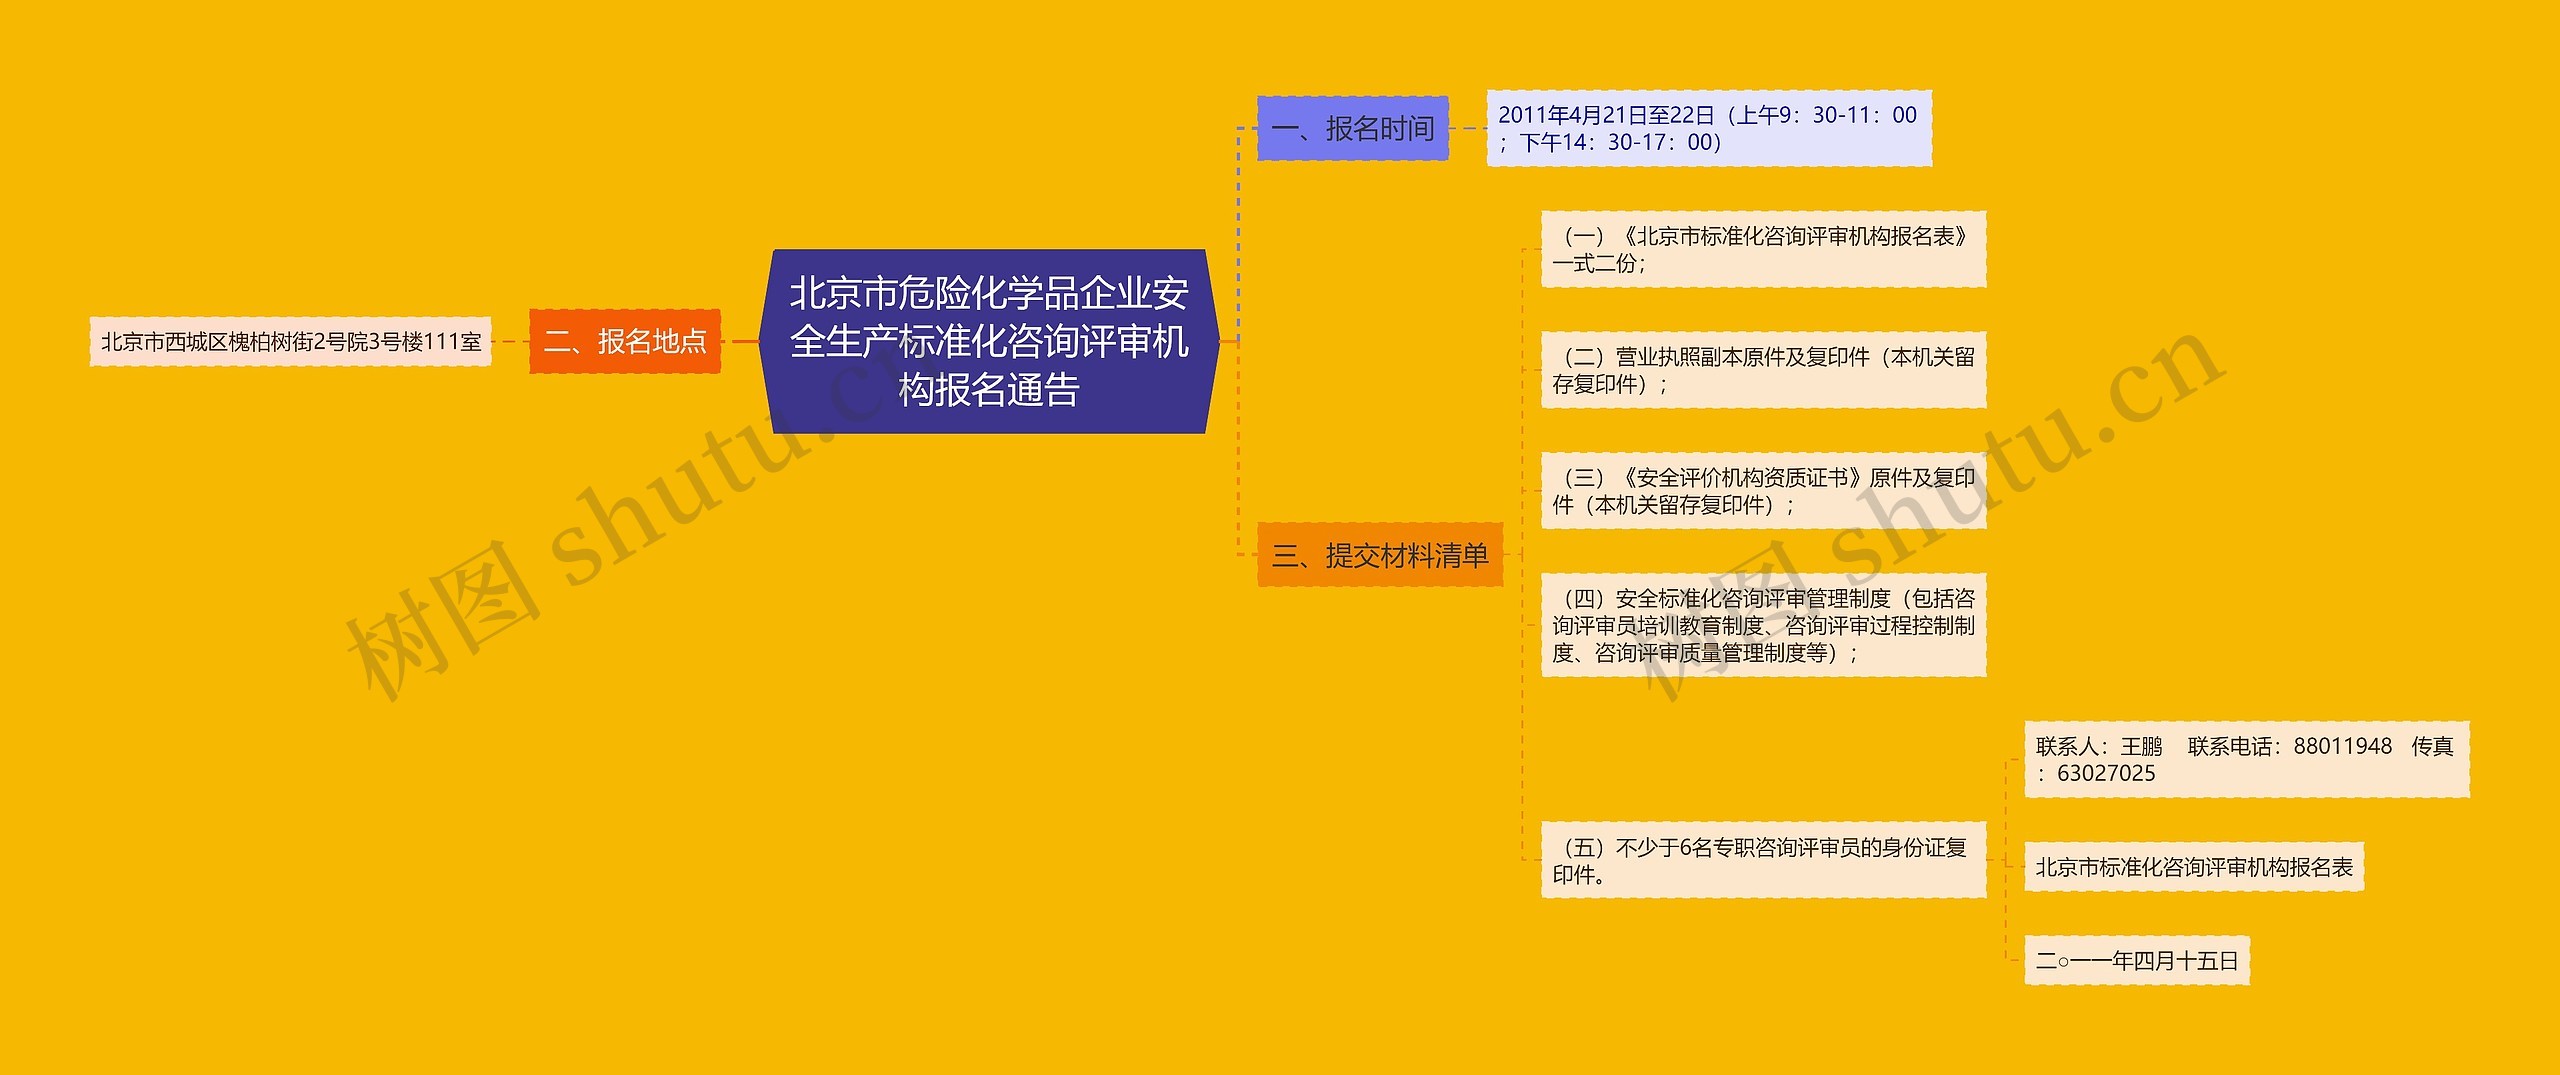 北京市危险化学品企业安全生产标准化咨询评审机构报名通告思维导图